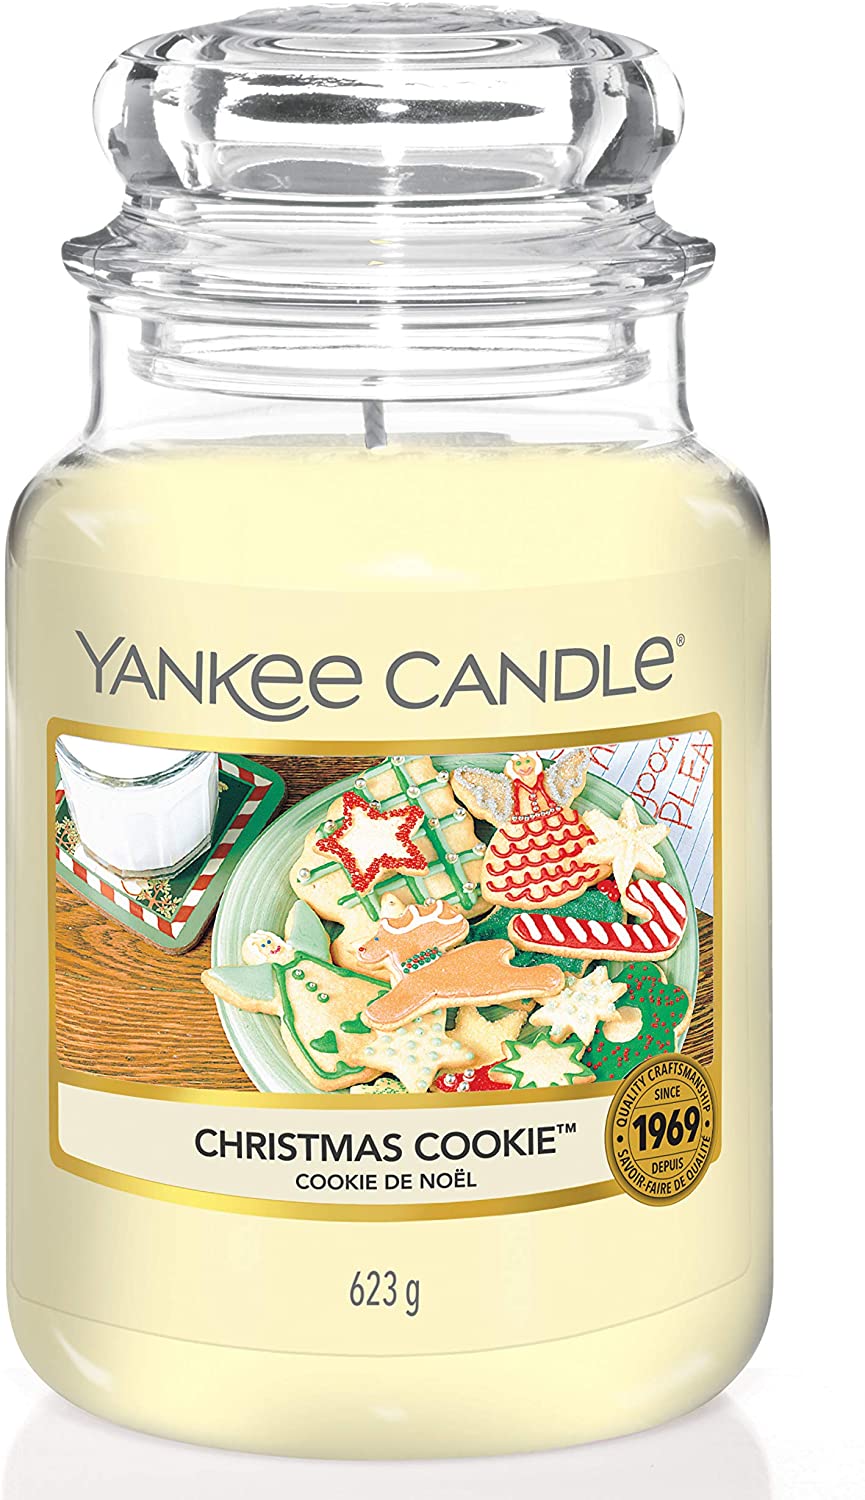 Yankee Candle Large Jar Candle